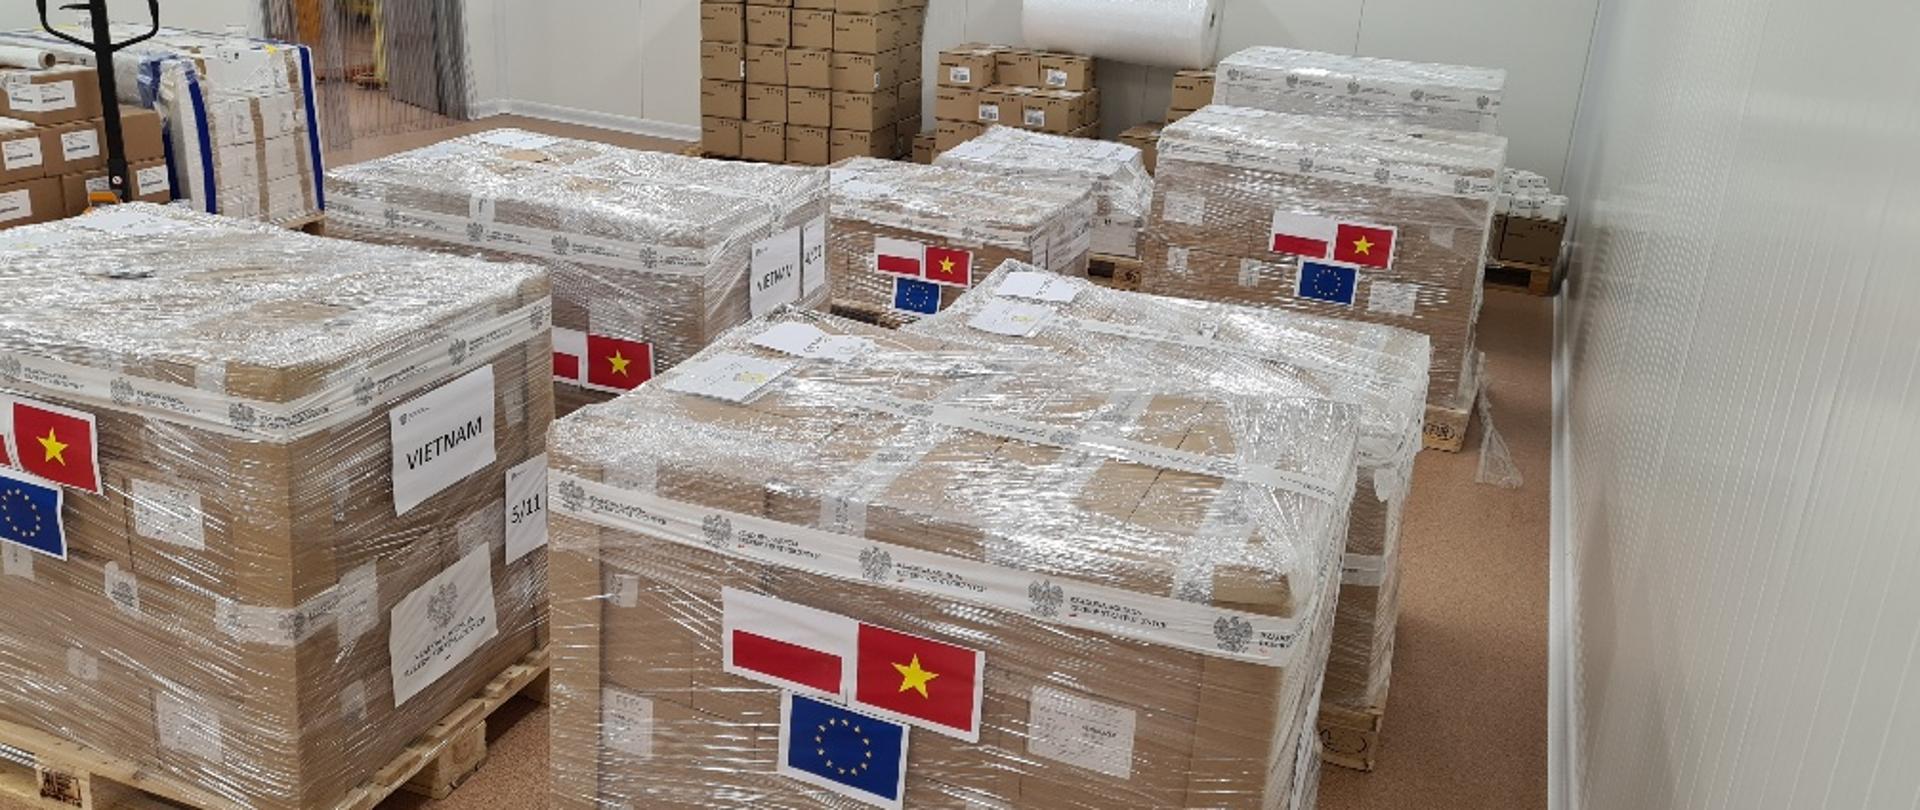 Zafoliowane, duże paczki z naklejkami flag Polski, Wietnamu i Unii Europejskiej